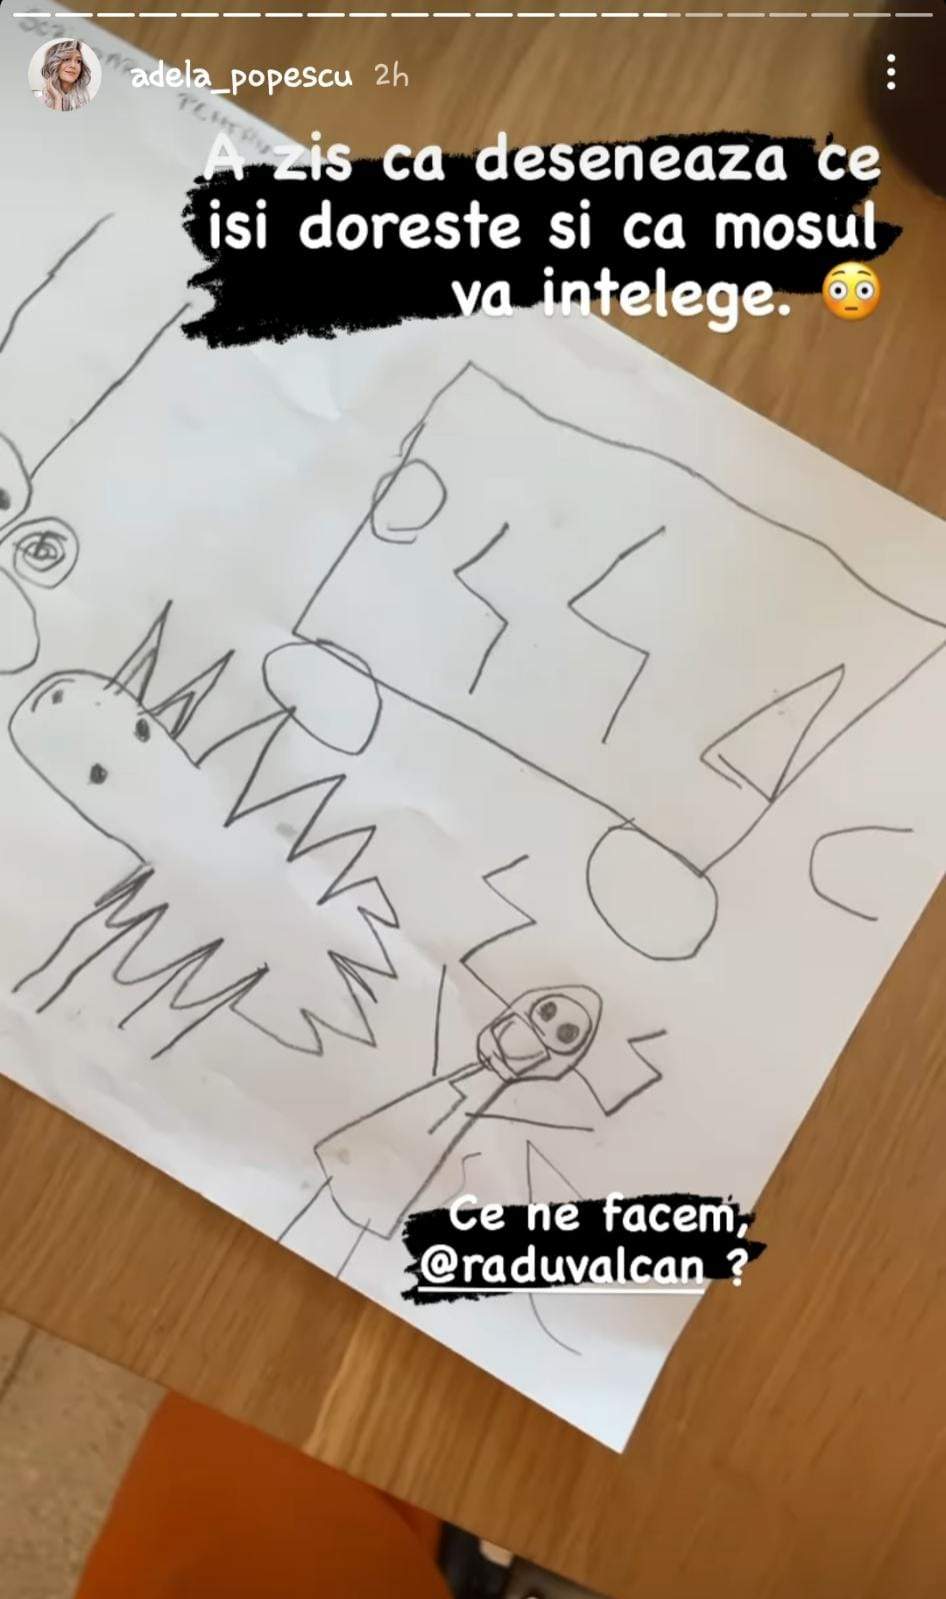 Copiii Adelei Popescu au desenat jucăriile pe care și le doresc de Crăciun. Cum a reacționat prezentatoarea TV: "Ce ne facem?" / FOTO